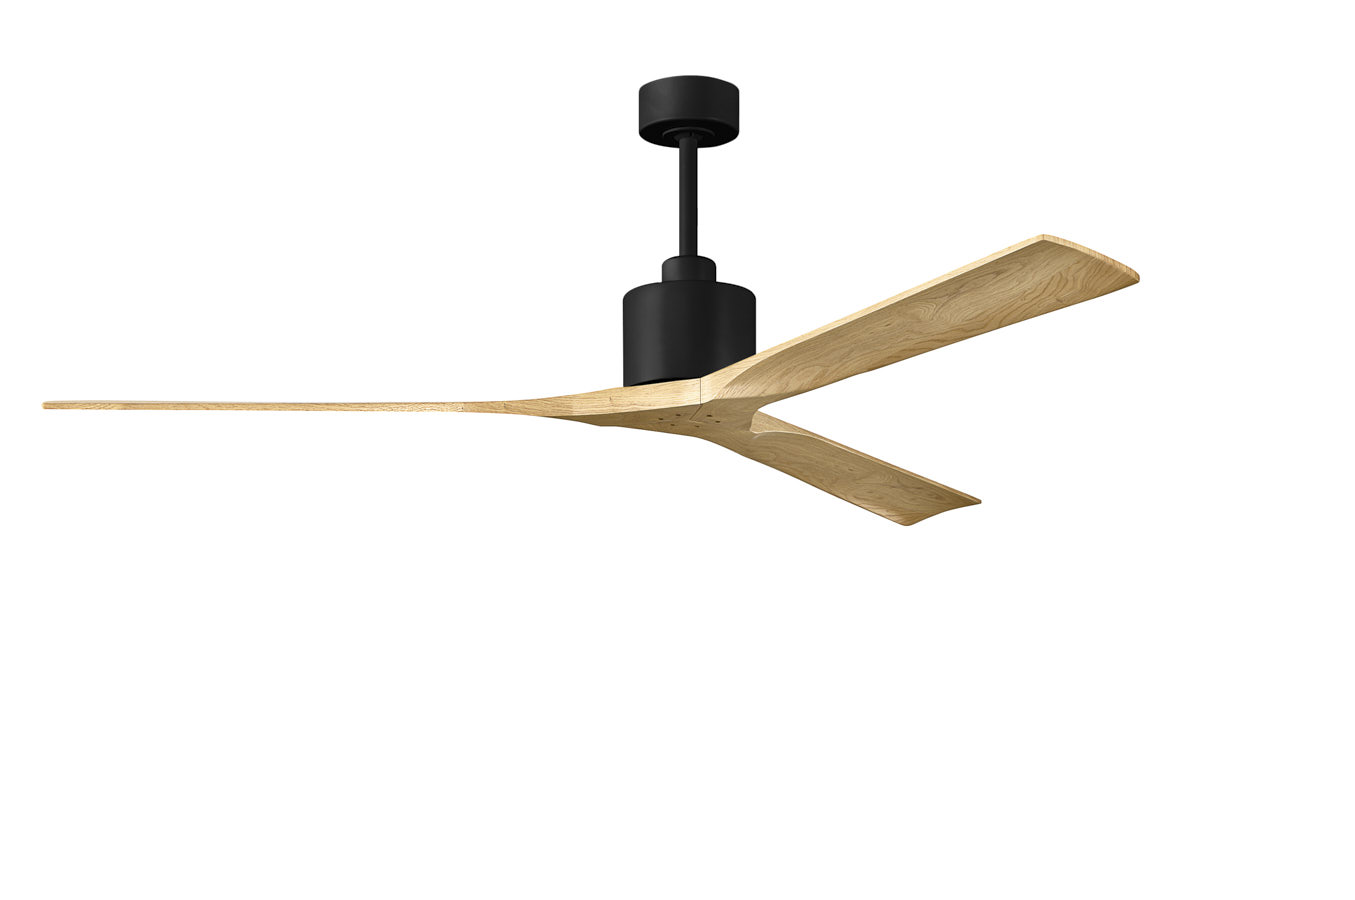 Nan XL ceiling fan in Matte Black with 72” Light Maple blades